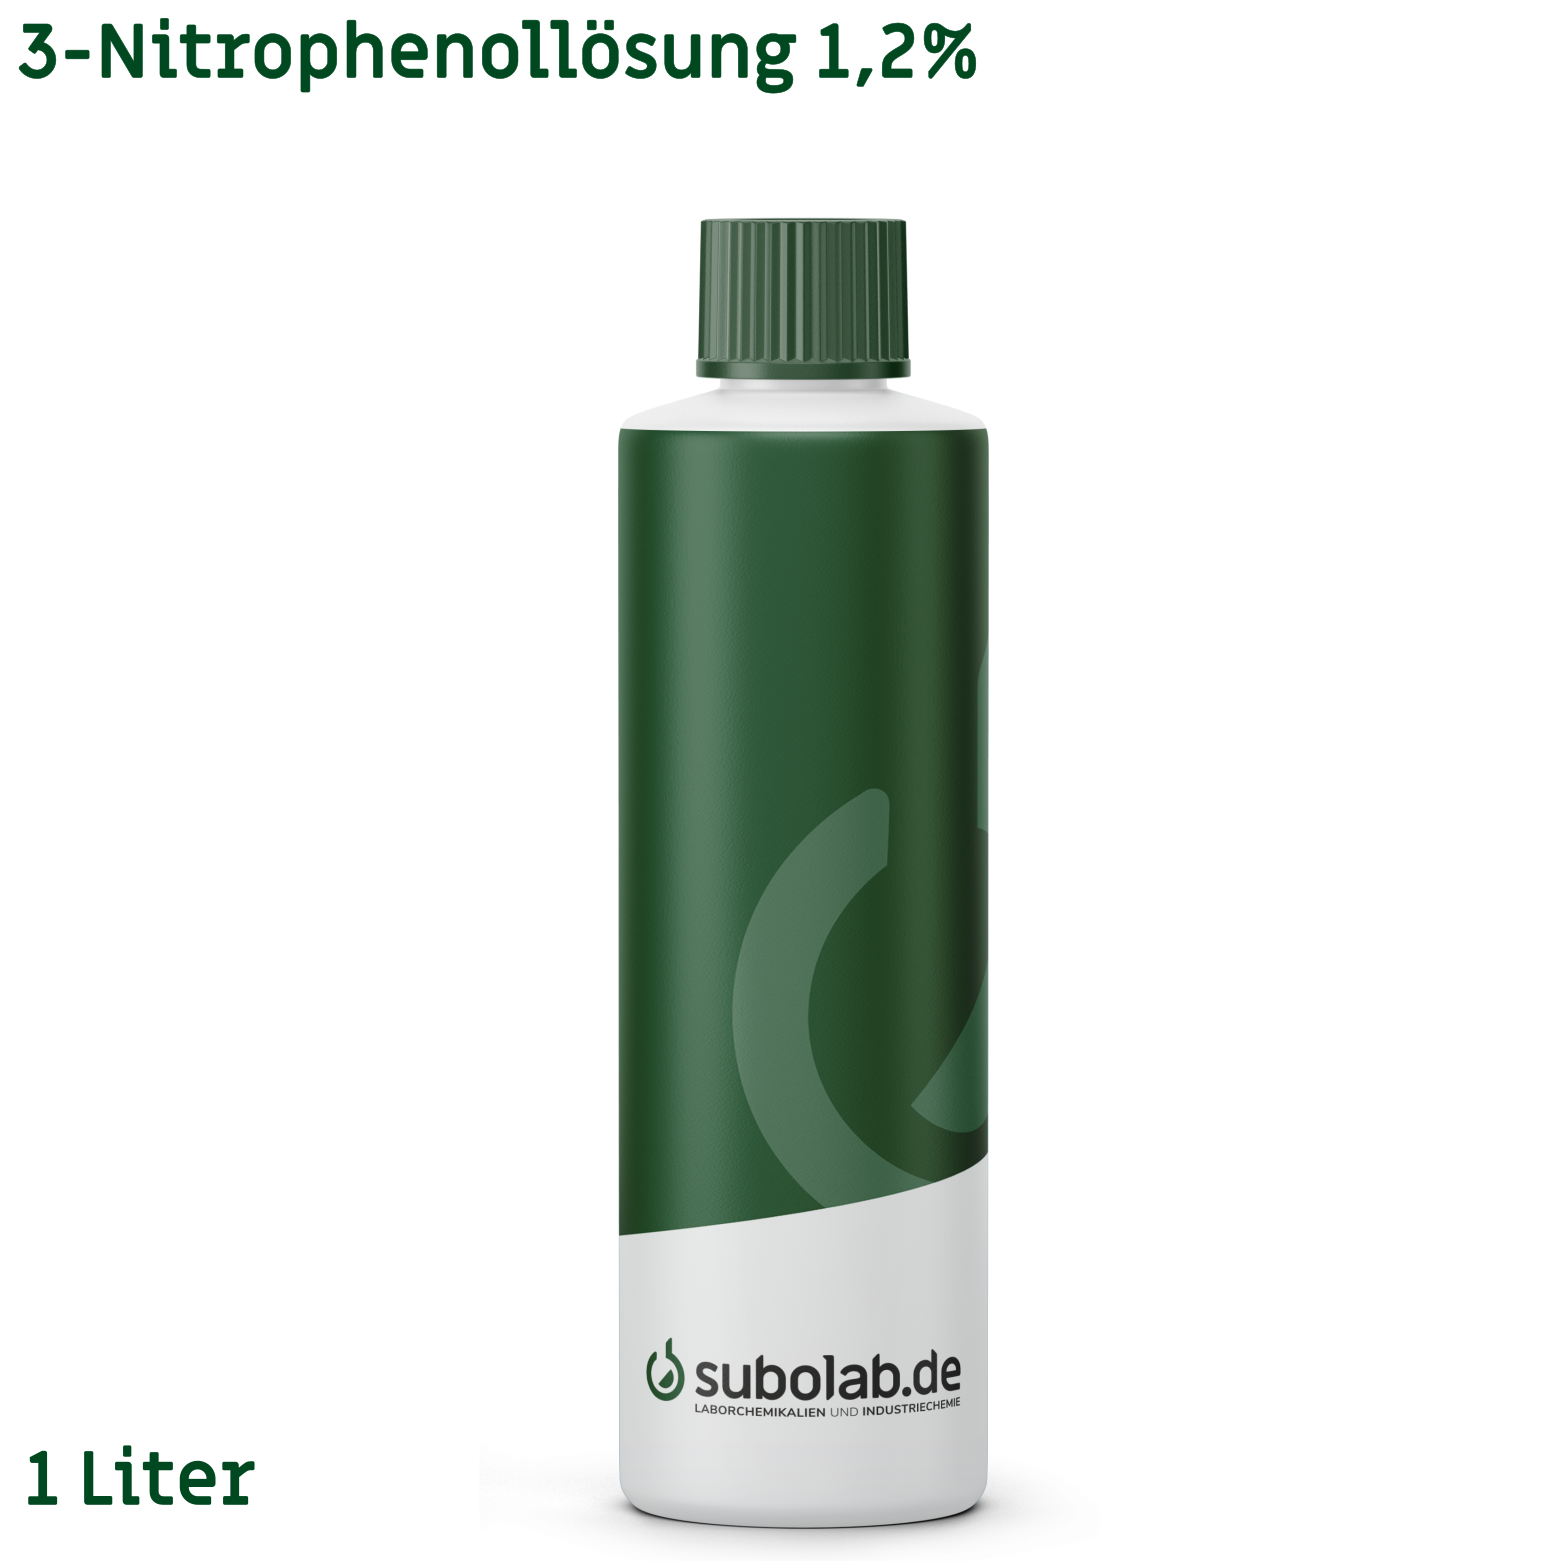 Bild von 3-Nitrophenollösung 1,2% (1 Liter)